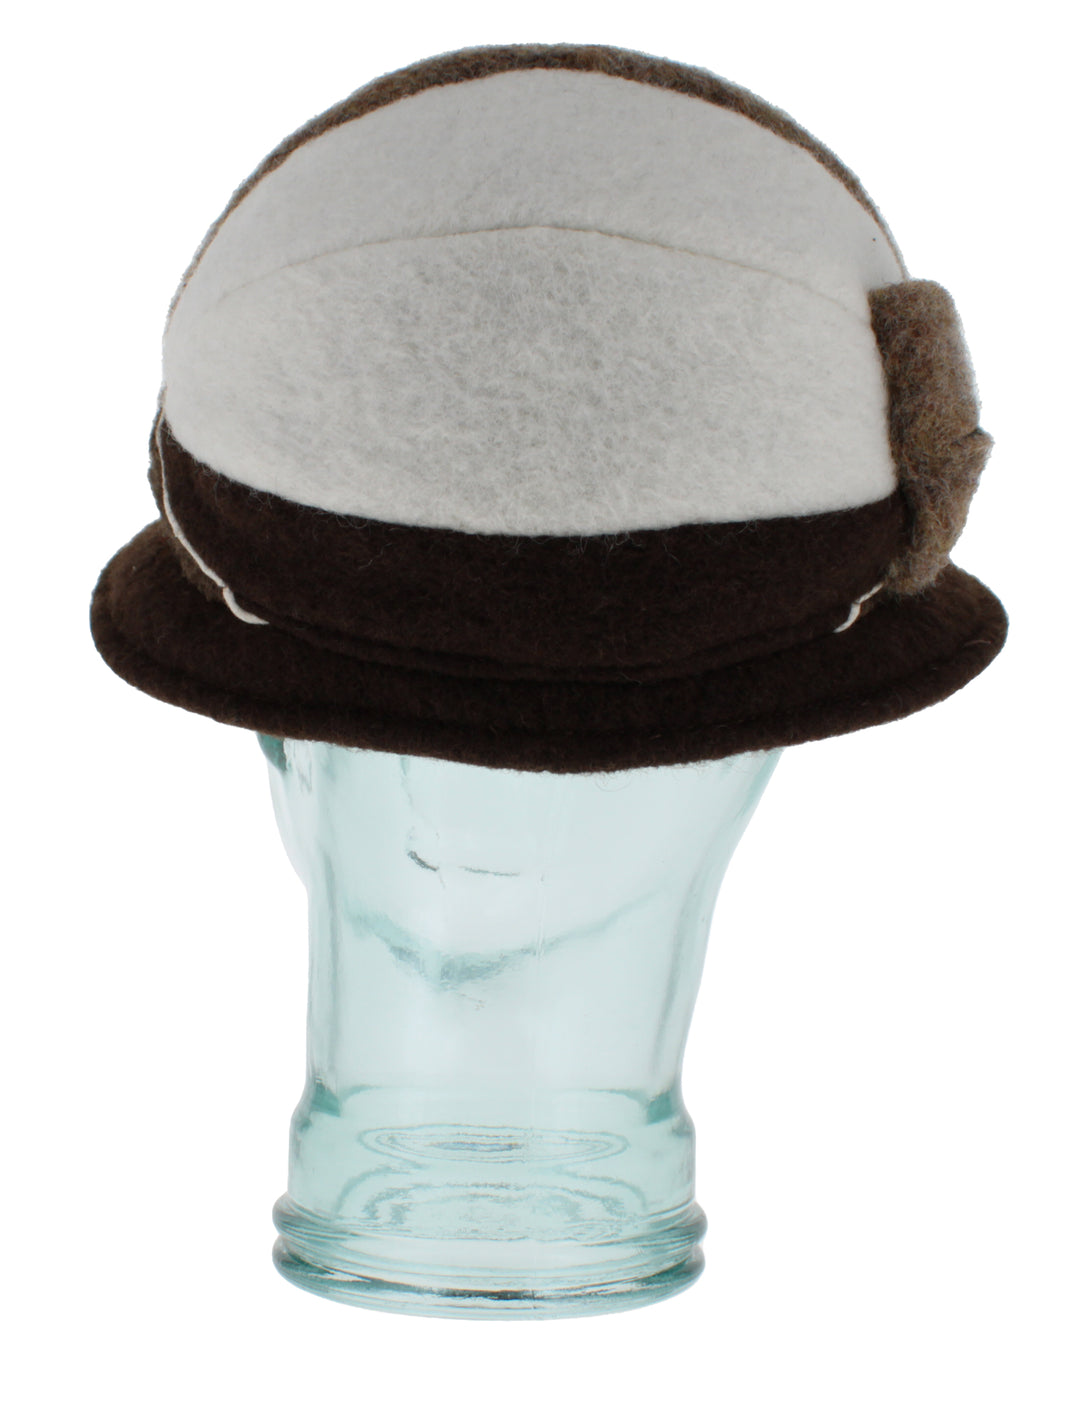 Belfry Tortona - Belfry Italia Unisex Hat Cap Carina   Hats in the Belfry